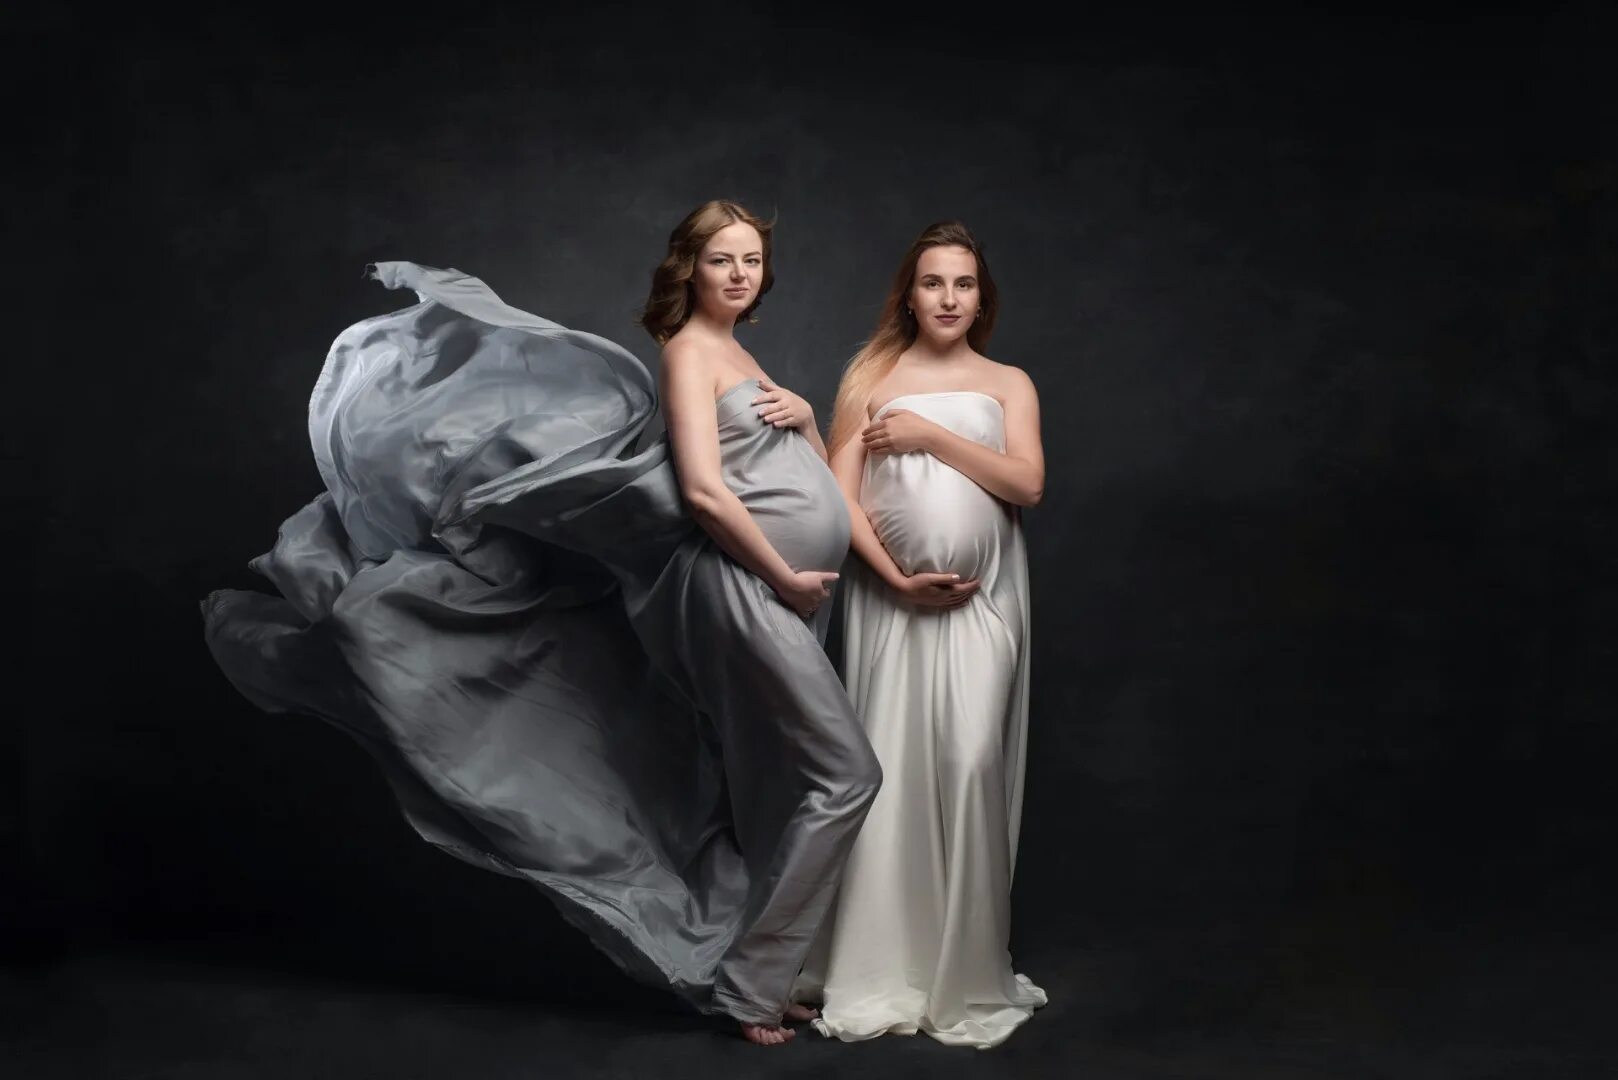 Фотограф беременность. Фотосессия беременных. Модные фотографы беременных. Профессиональная съемка беременные. Фотосессия беременности американские фотографы.